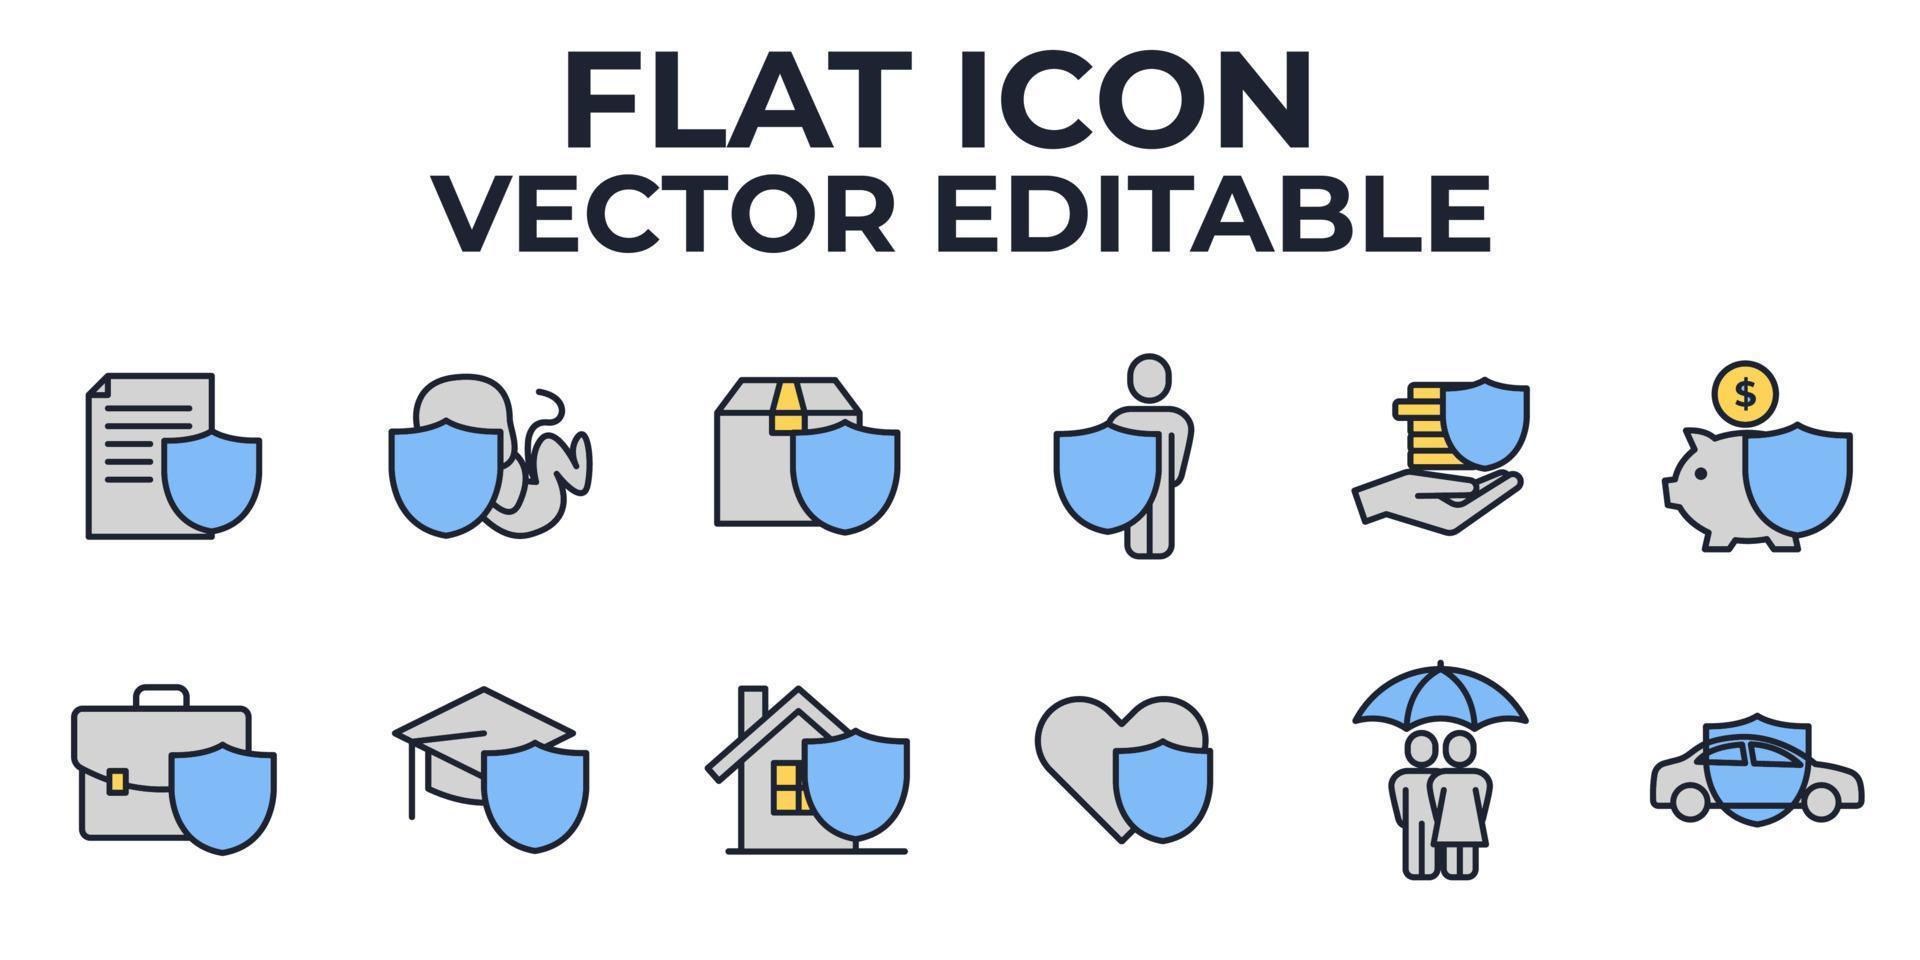 plantilla de símbolo de icono de conjunto de seguros para ilustración de vector de logotipo de colección de diseño gráfico y web